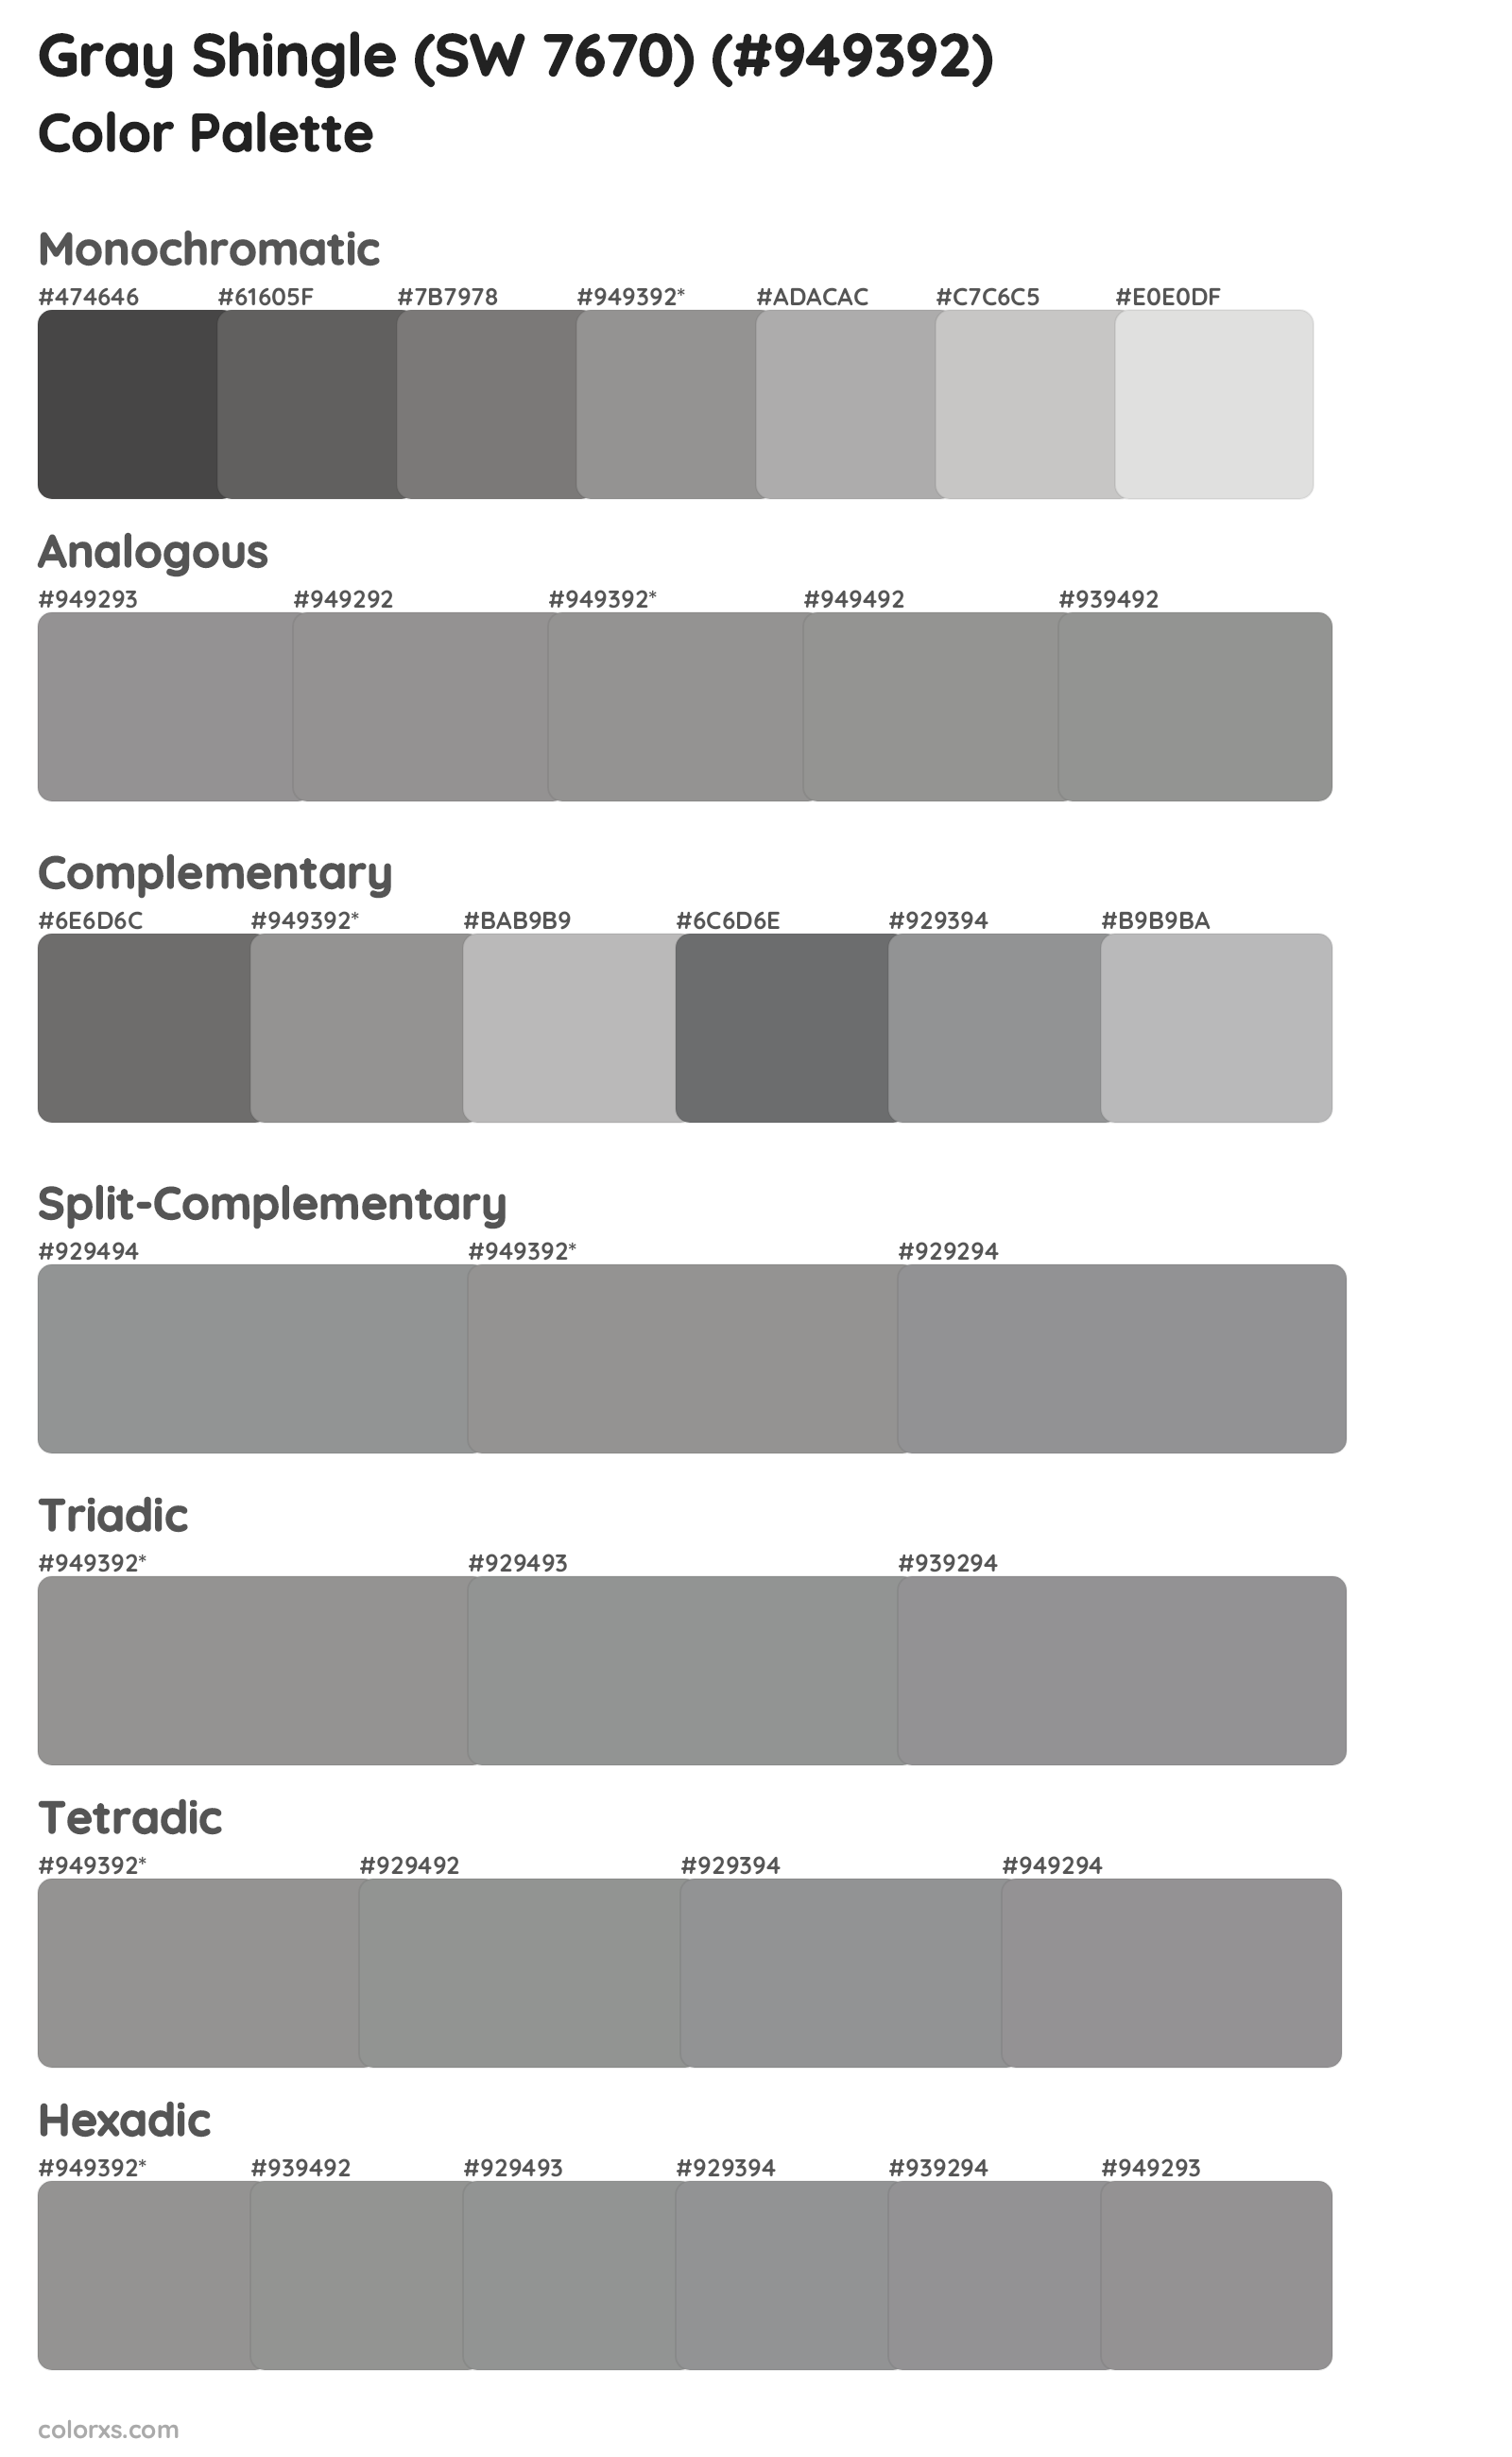 Gray Shingle (SW 7670) Color Scheme Palettes